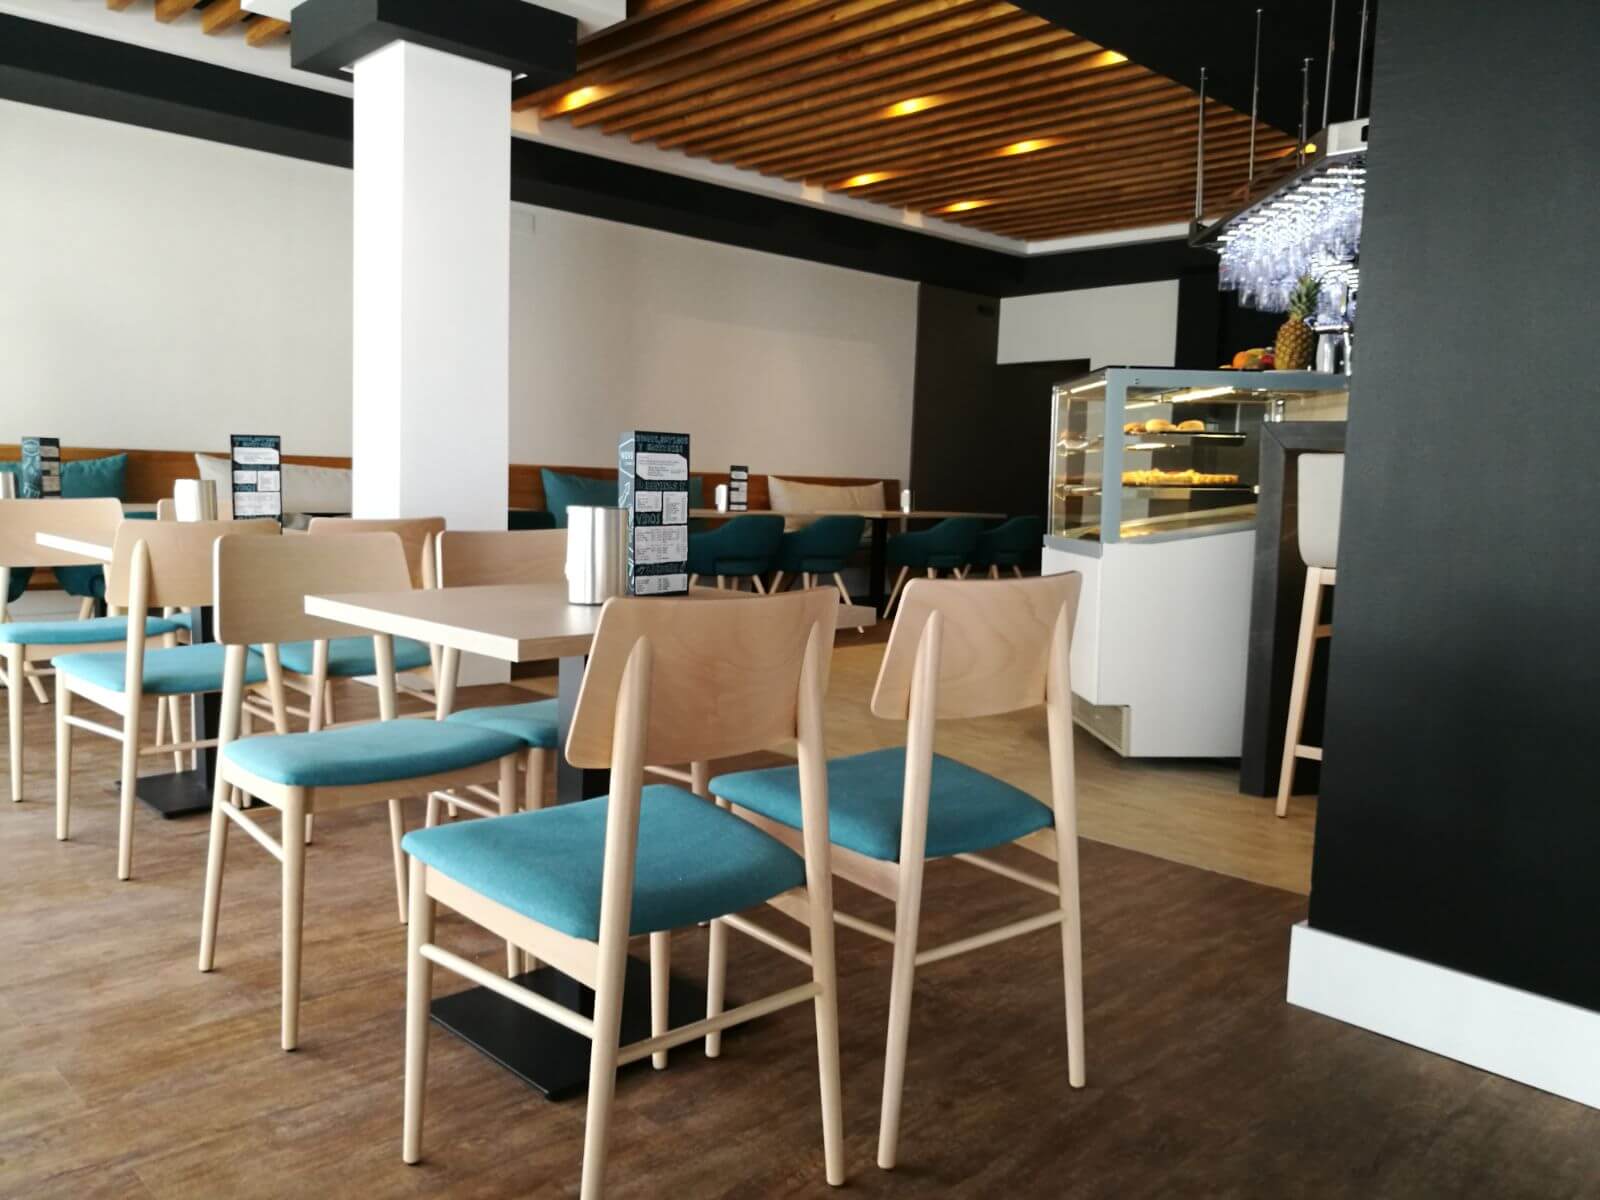 sillas tapizadas y mesas interior restaurante